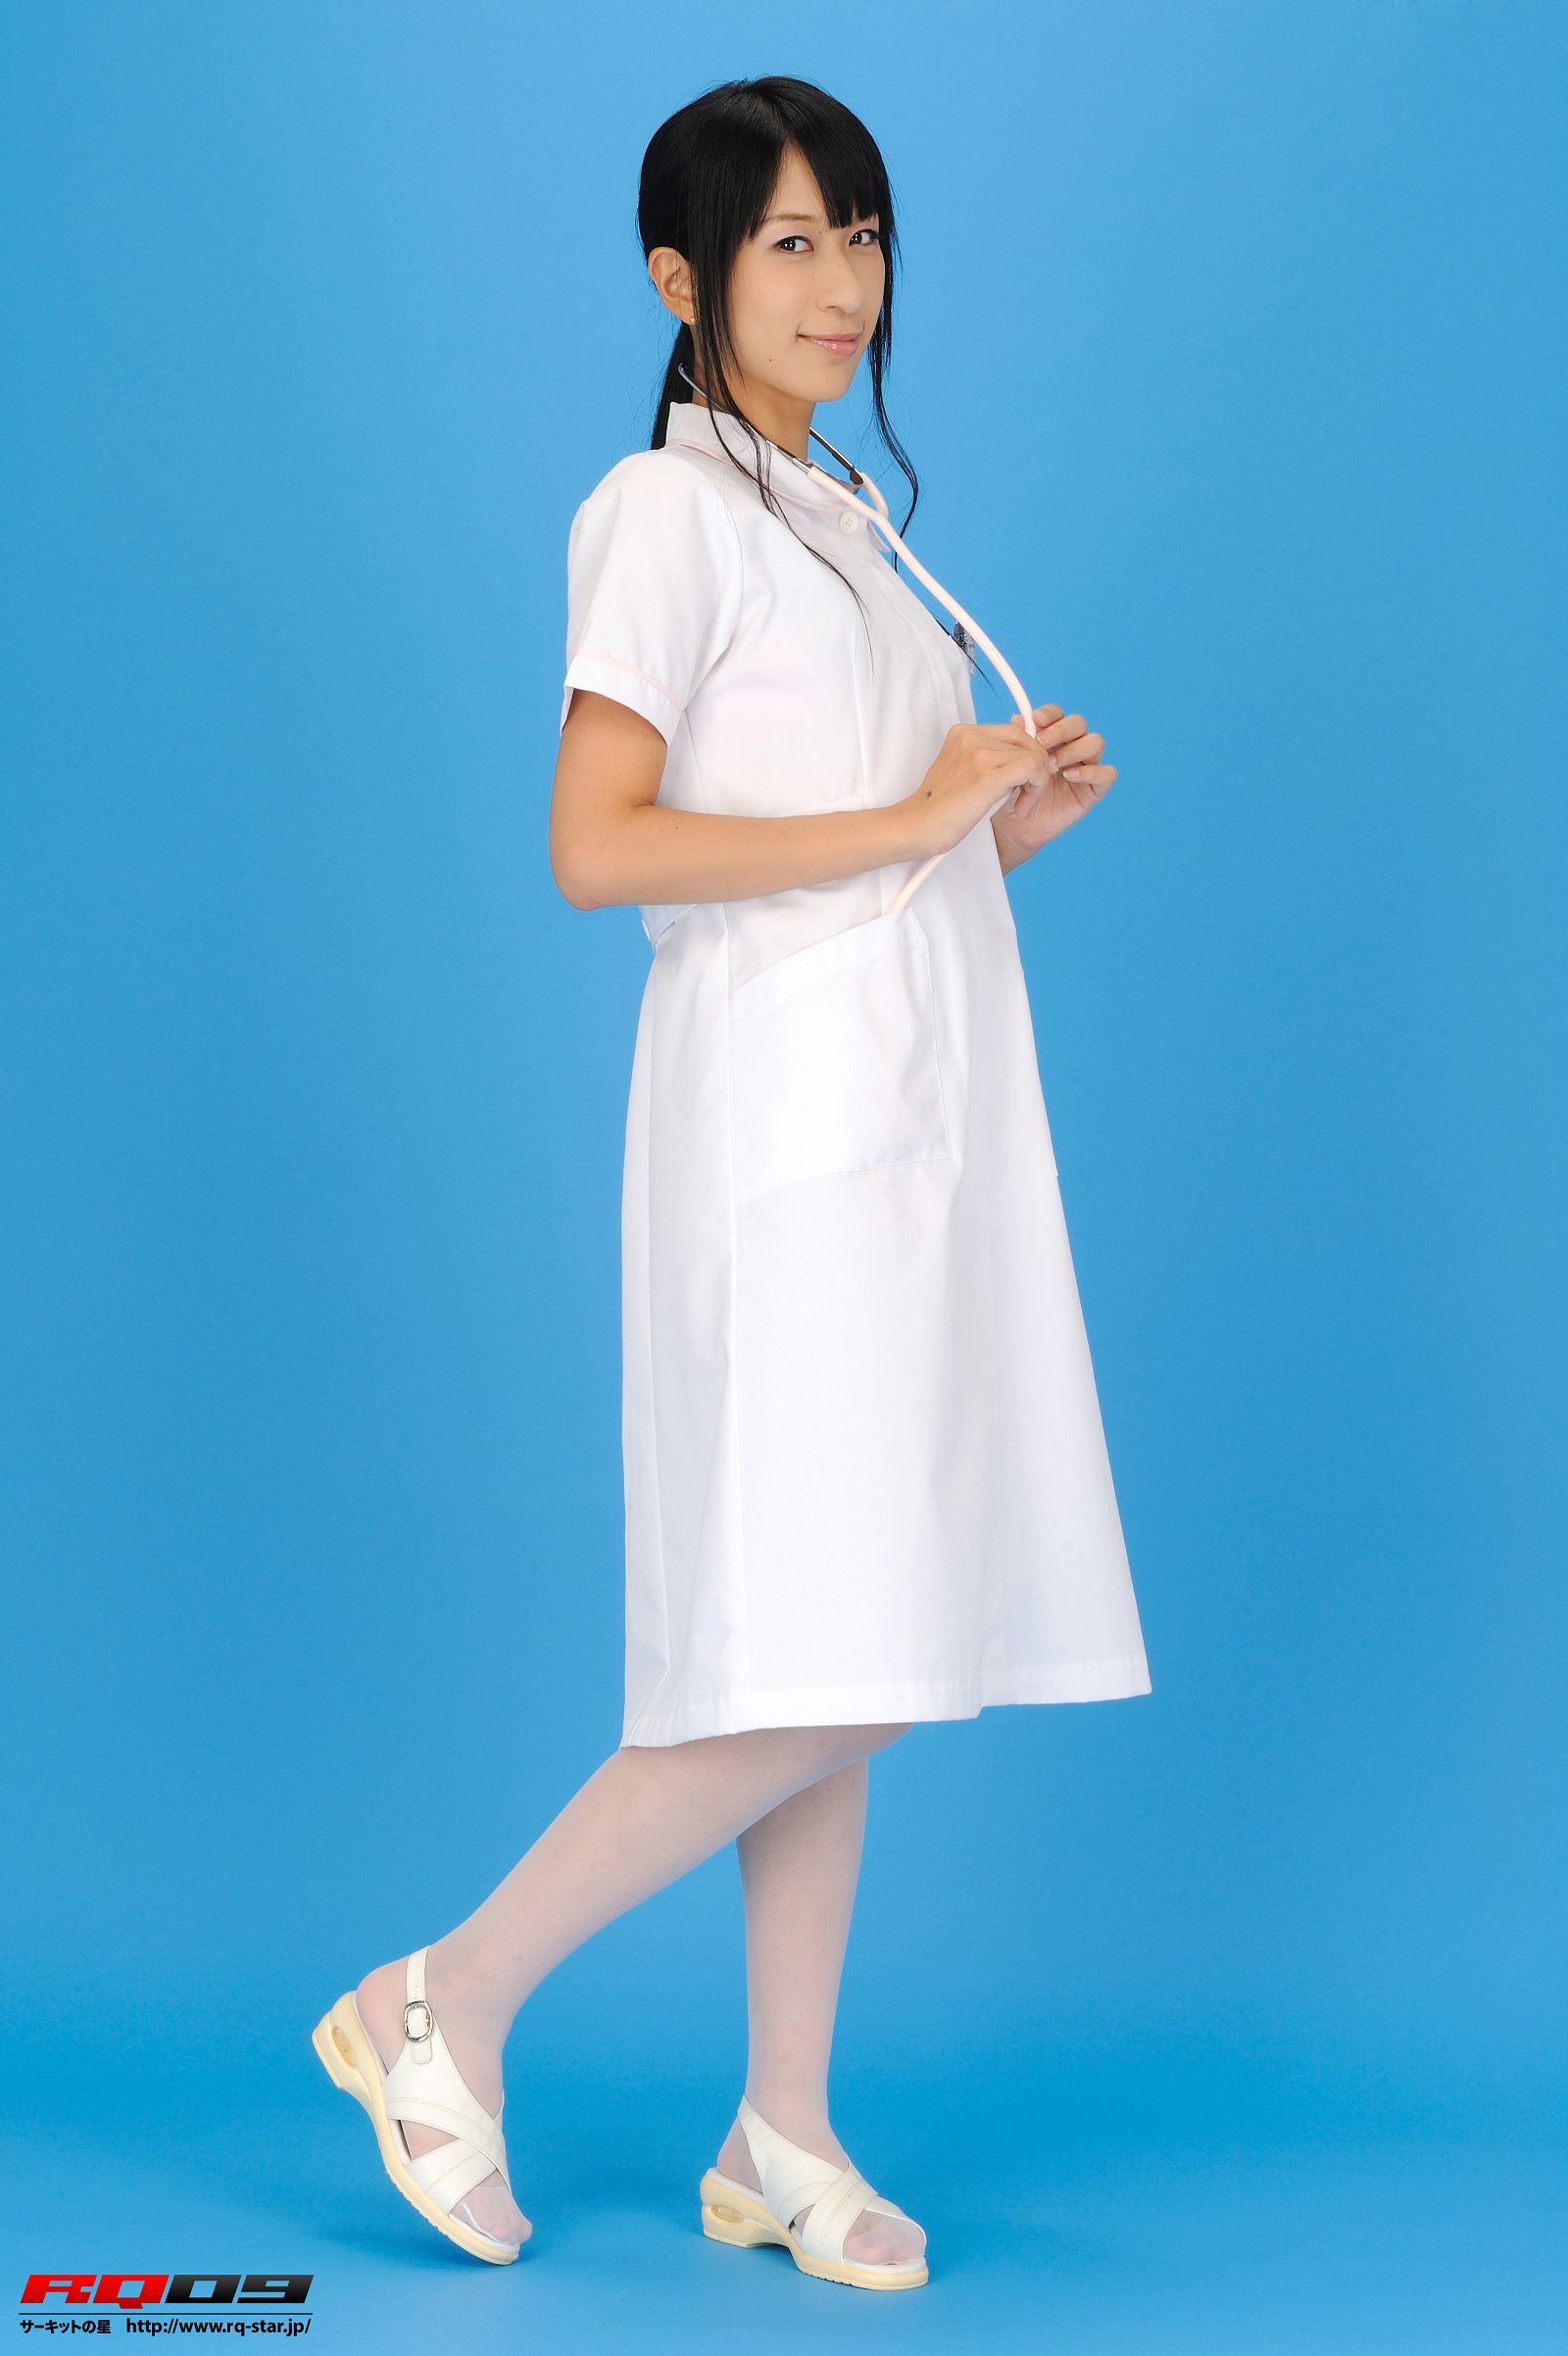 [RQ-STAR美女] NO.0216 Hiroko Yoshino よしのひろこ Nurse – White3